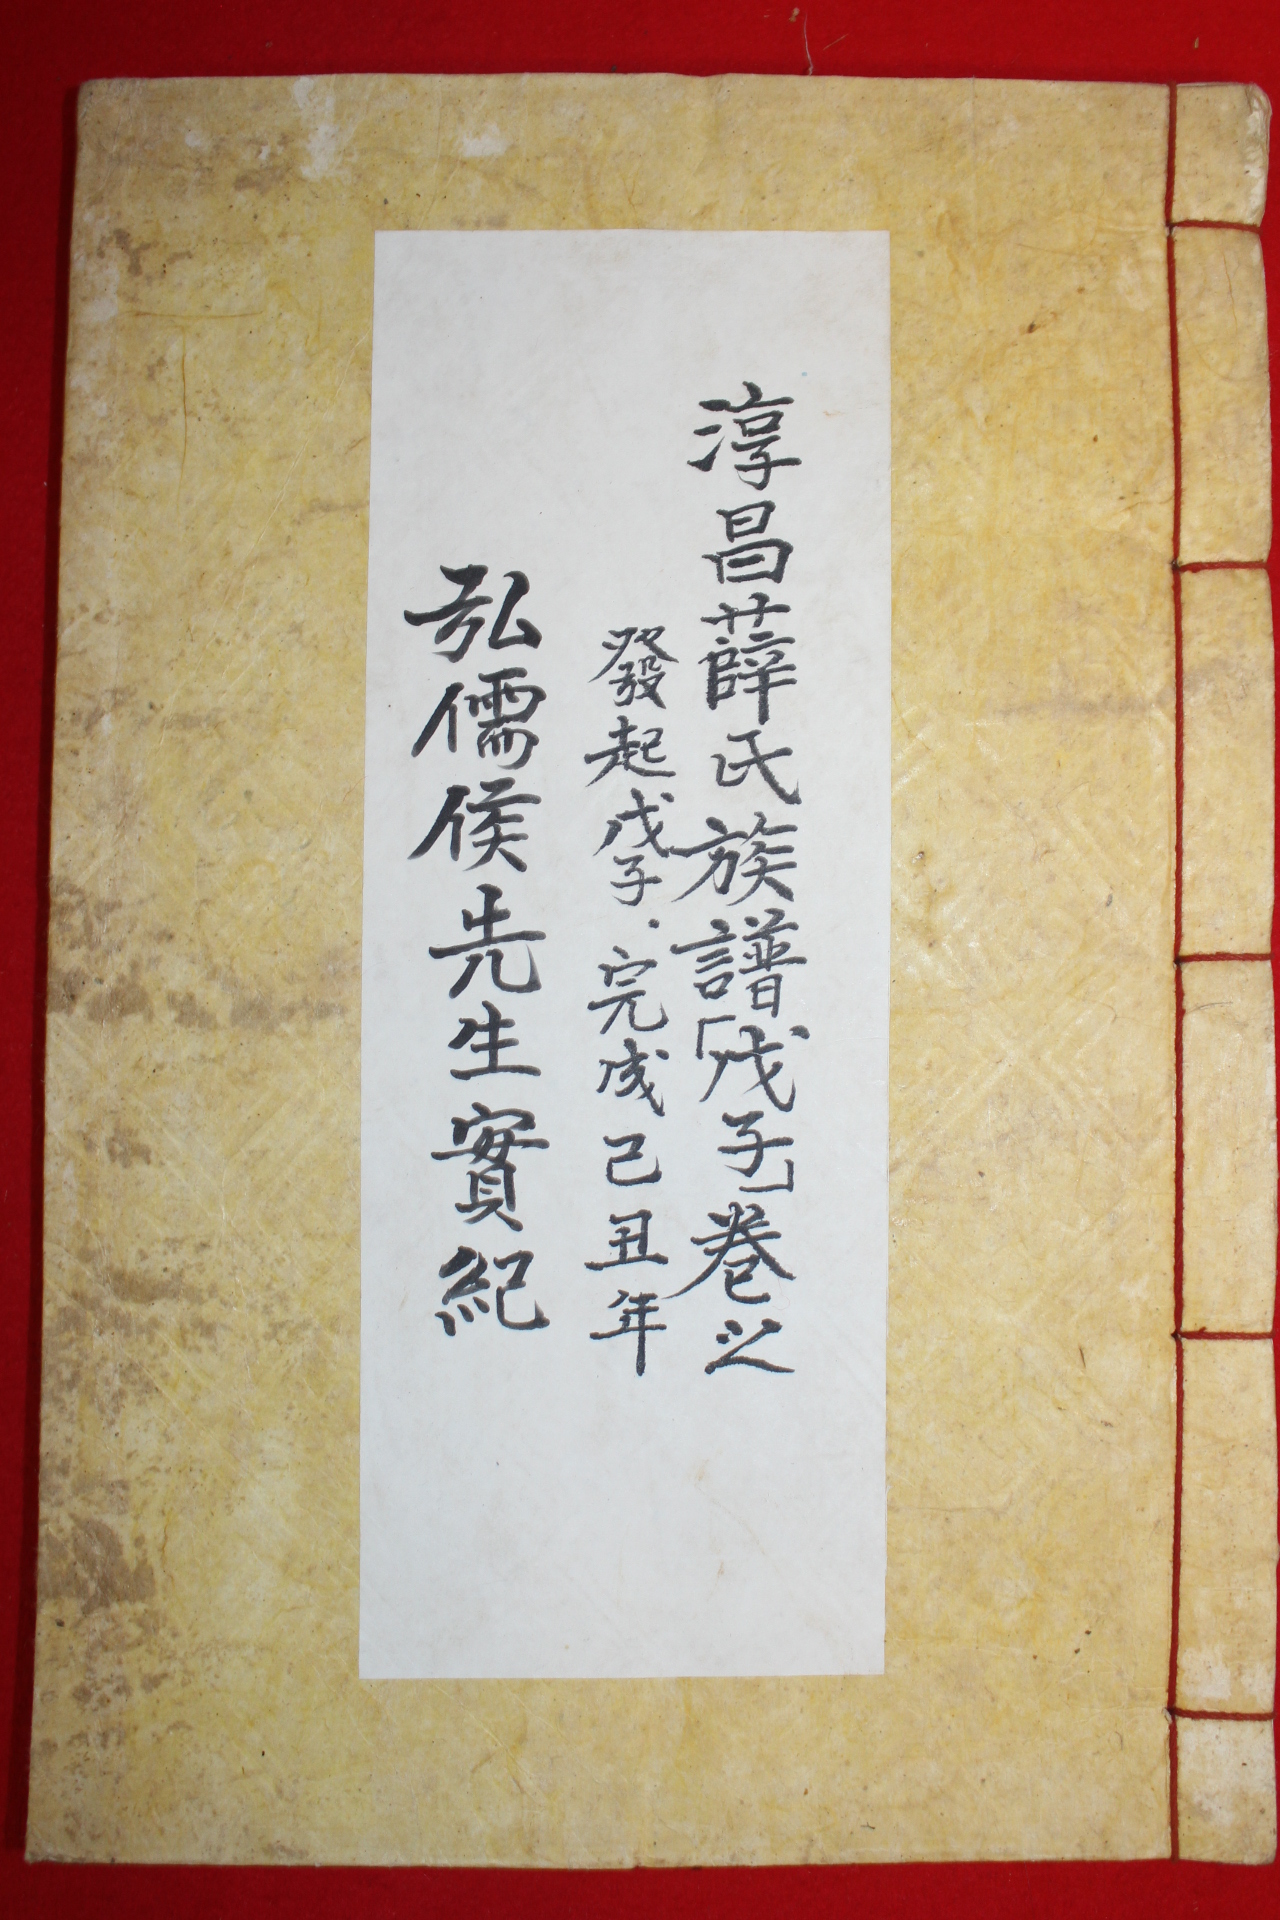 1948년 순창설씨 석판본 홍유후실기(弘儒侯實紀) 1책완질